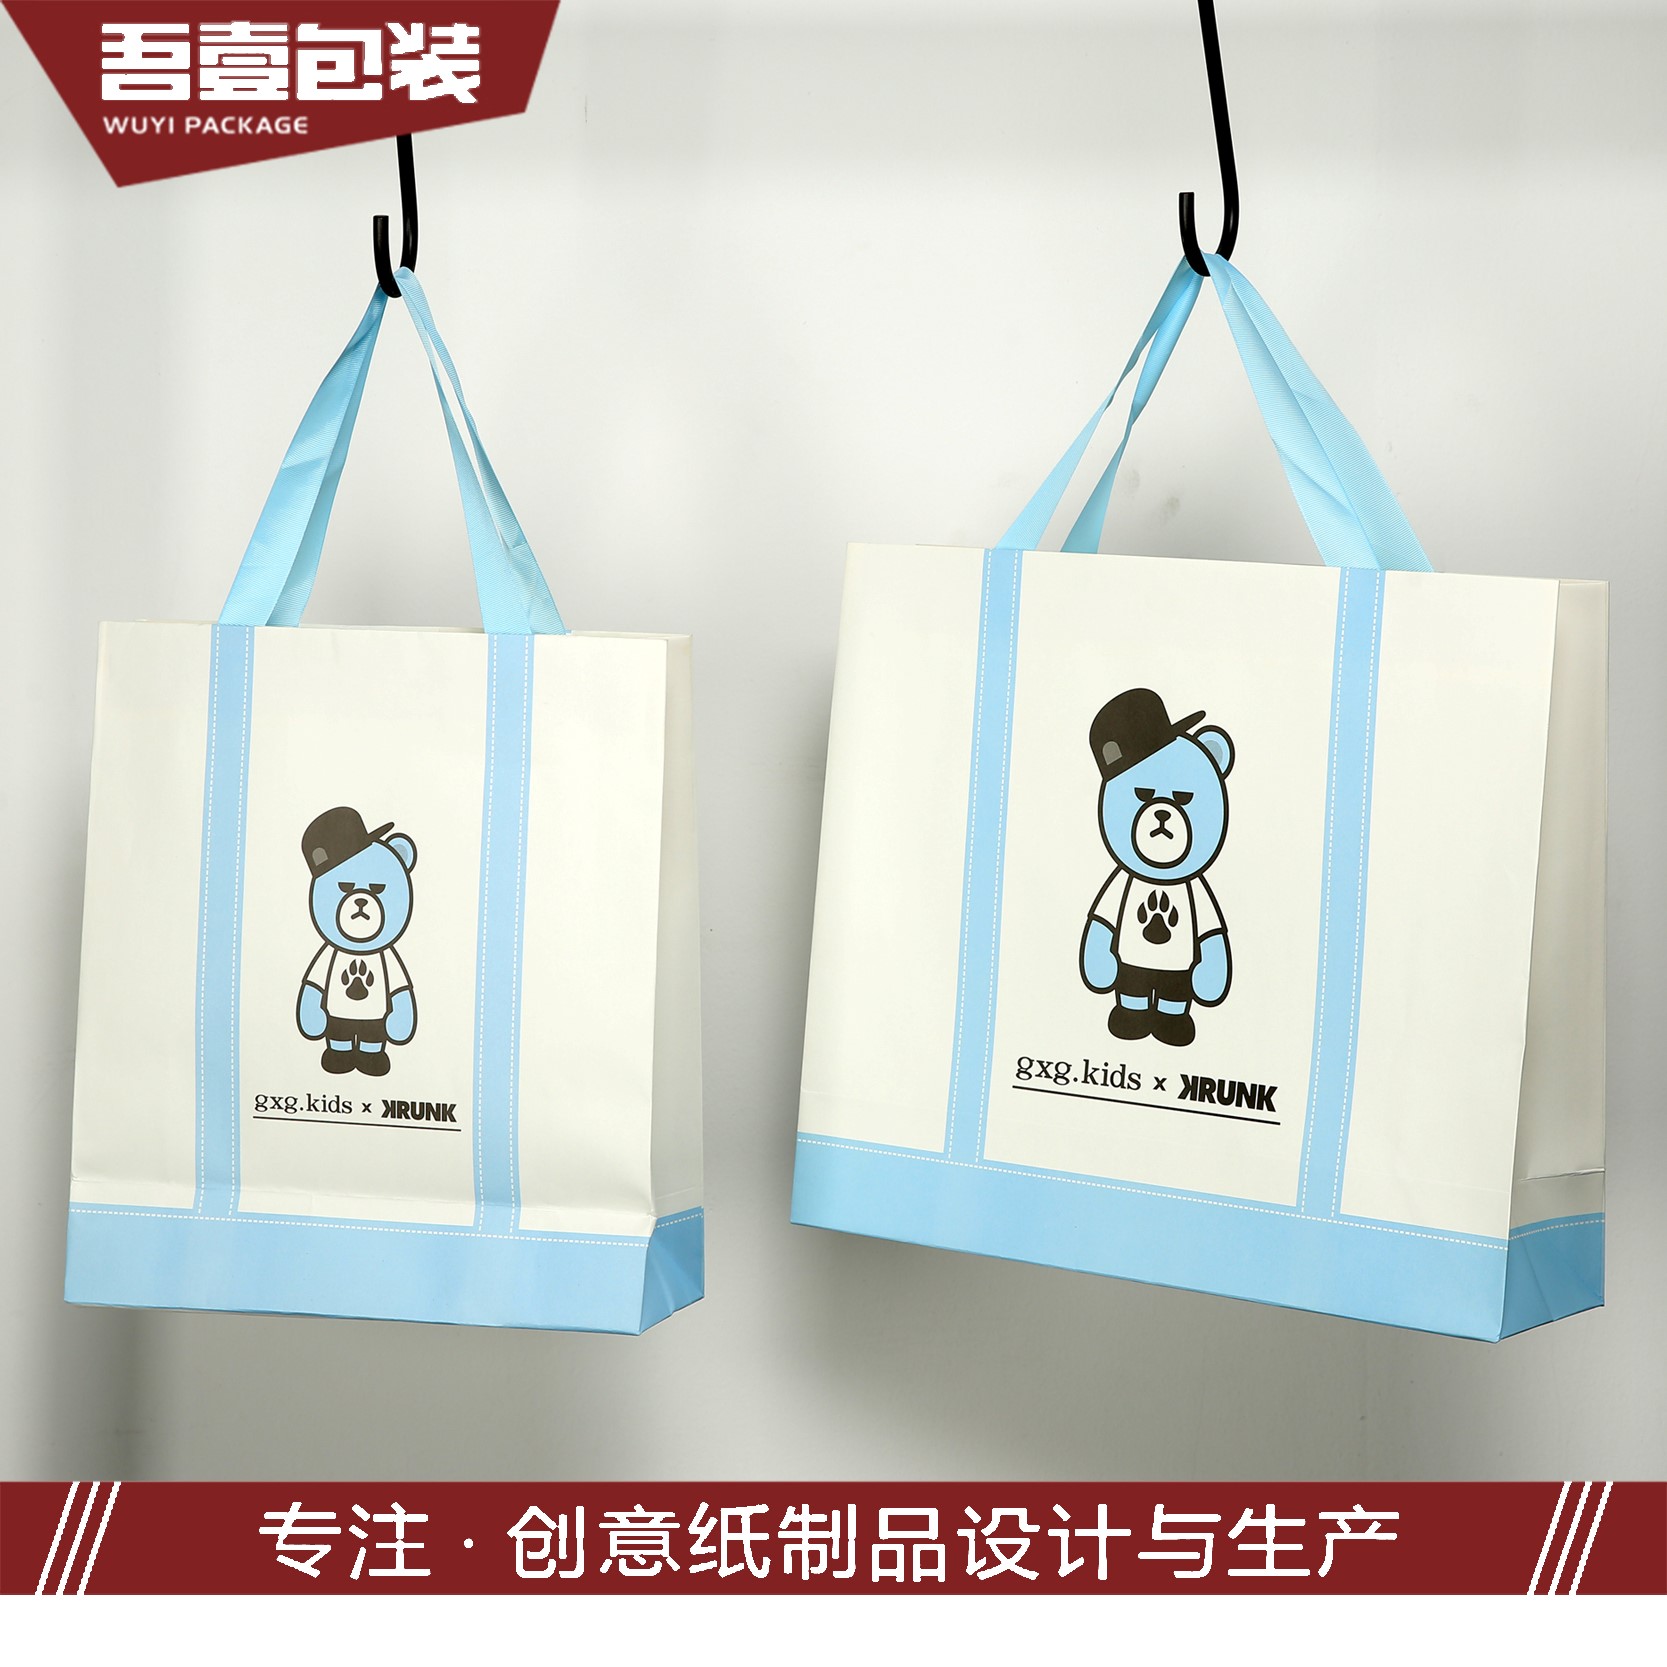 苏州吾壹包装彩印有限公司将参加食品包装展